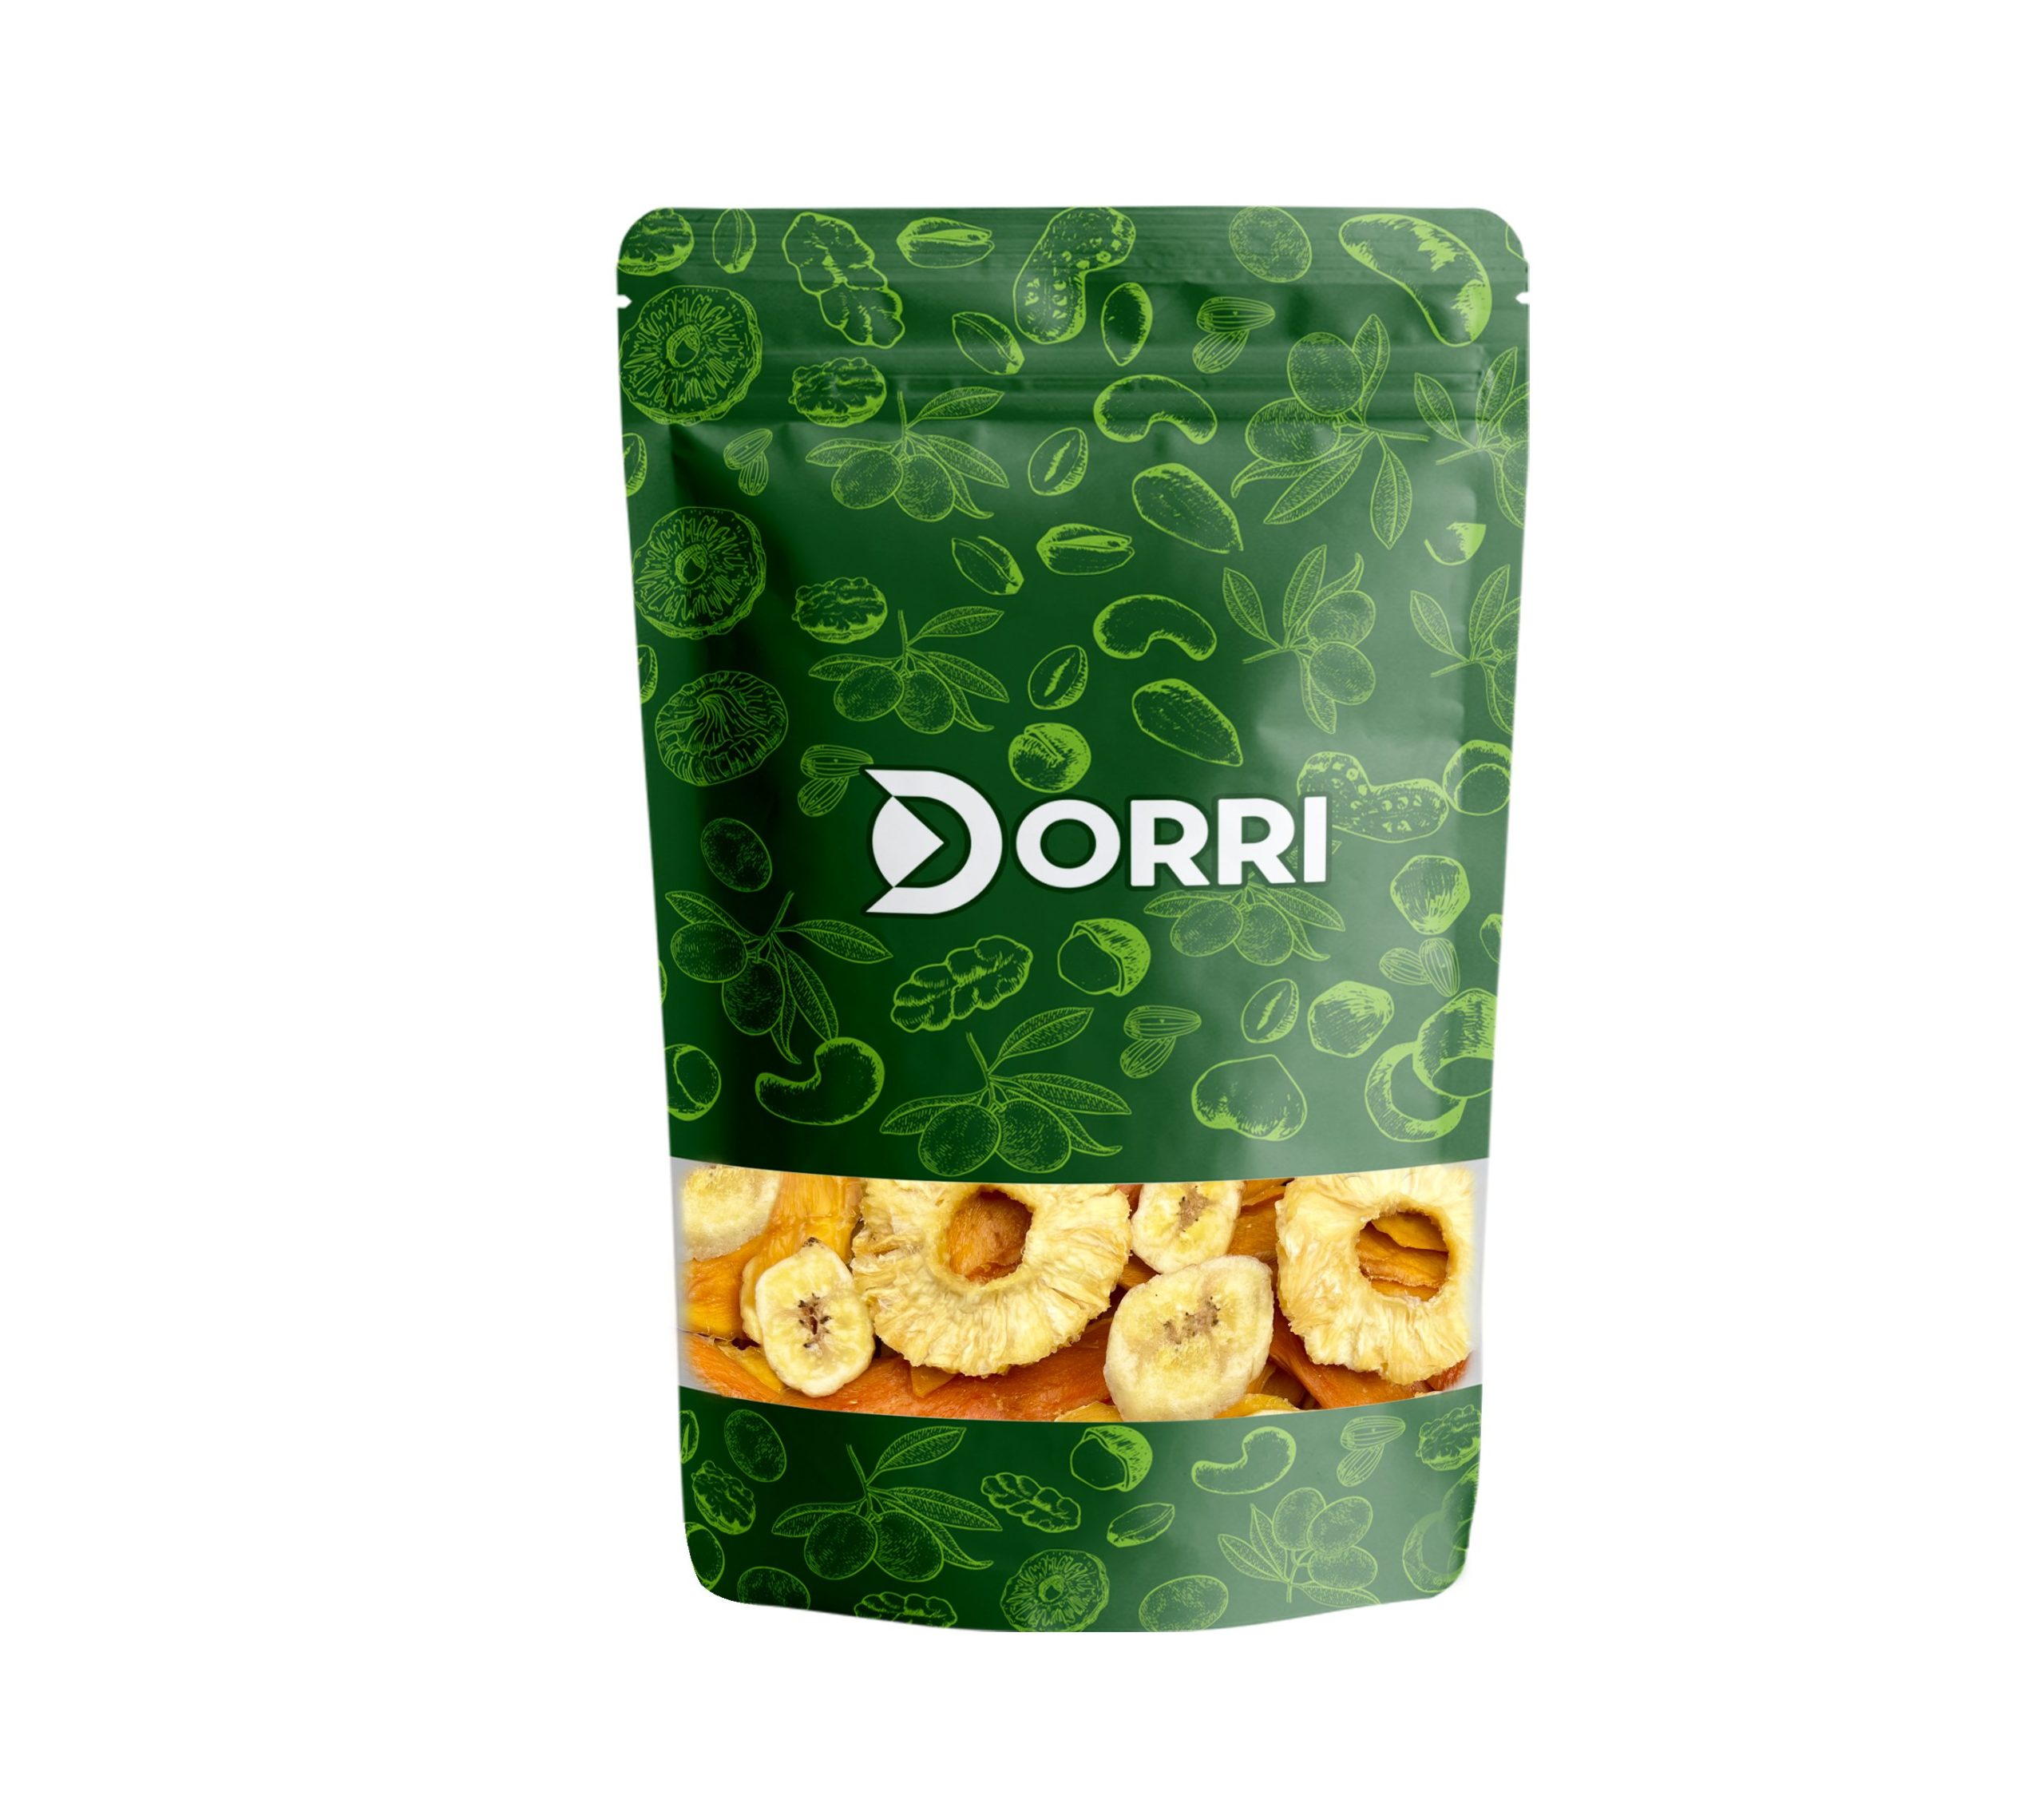 Dorri - Tropical mix